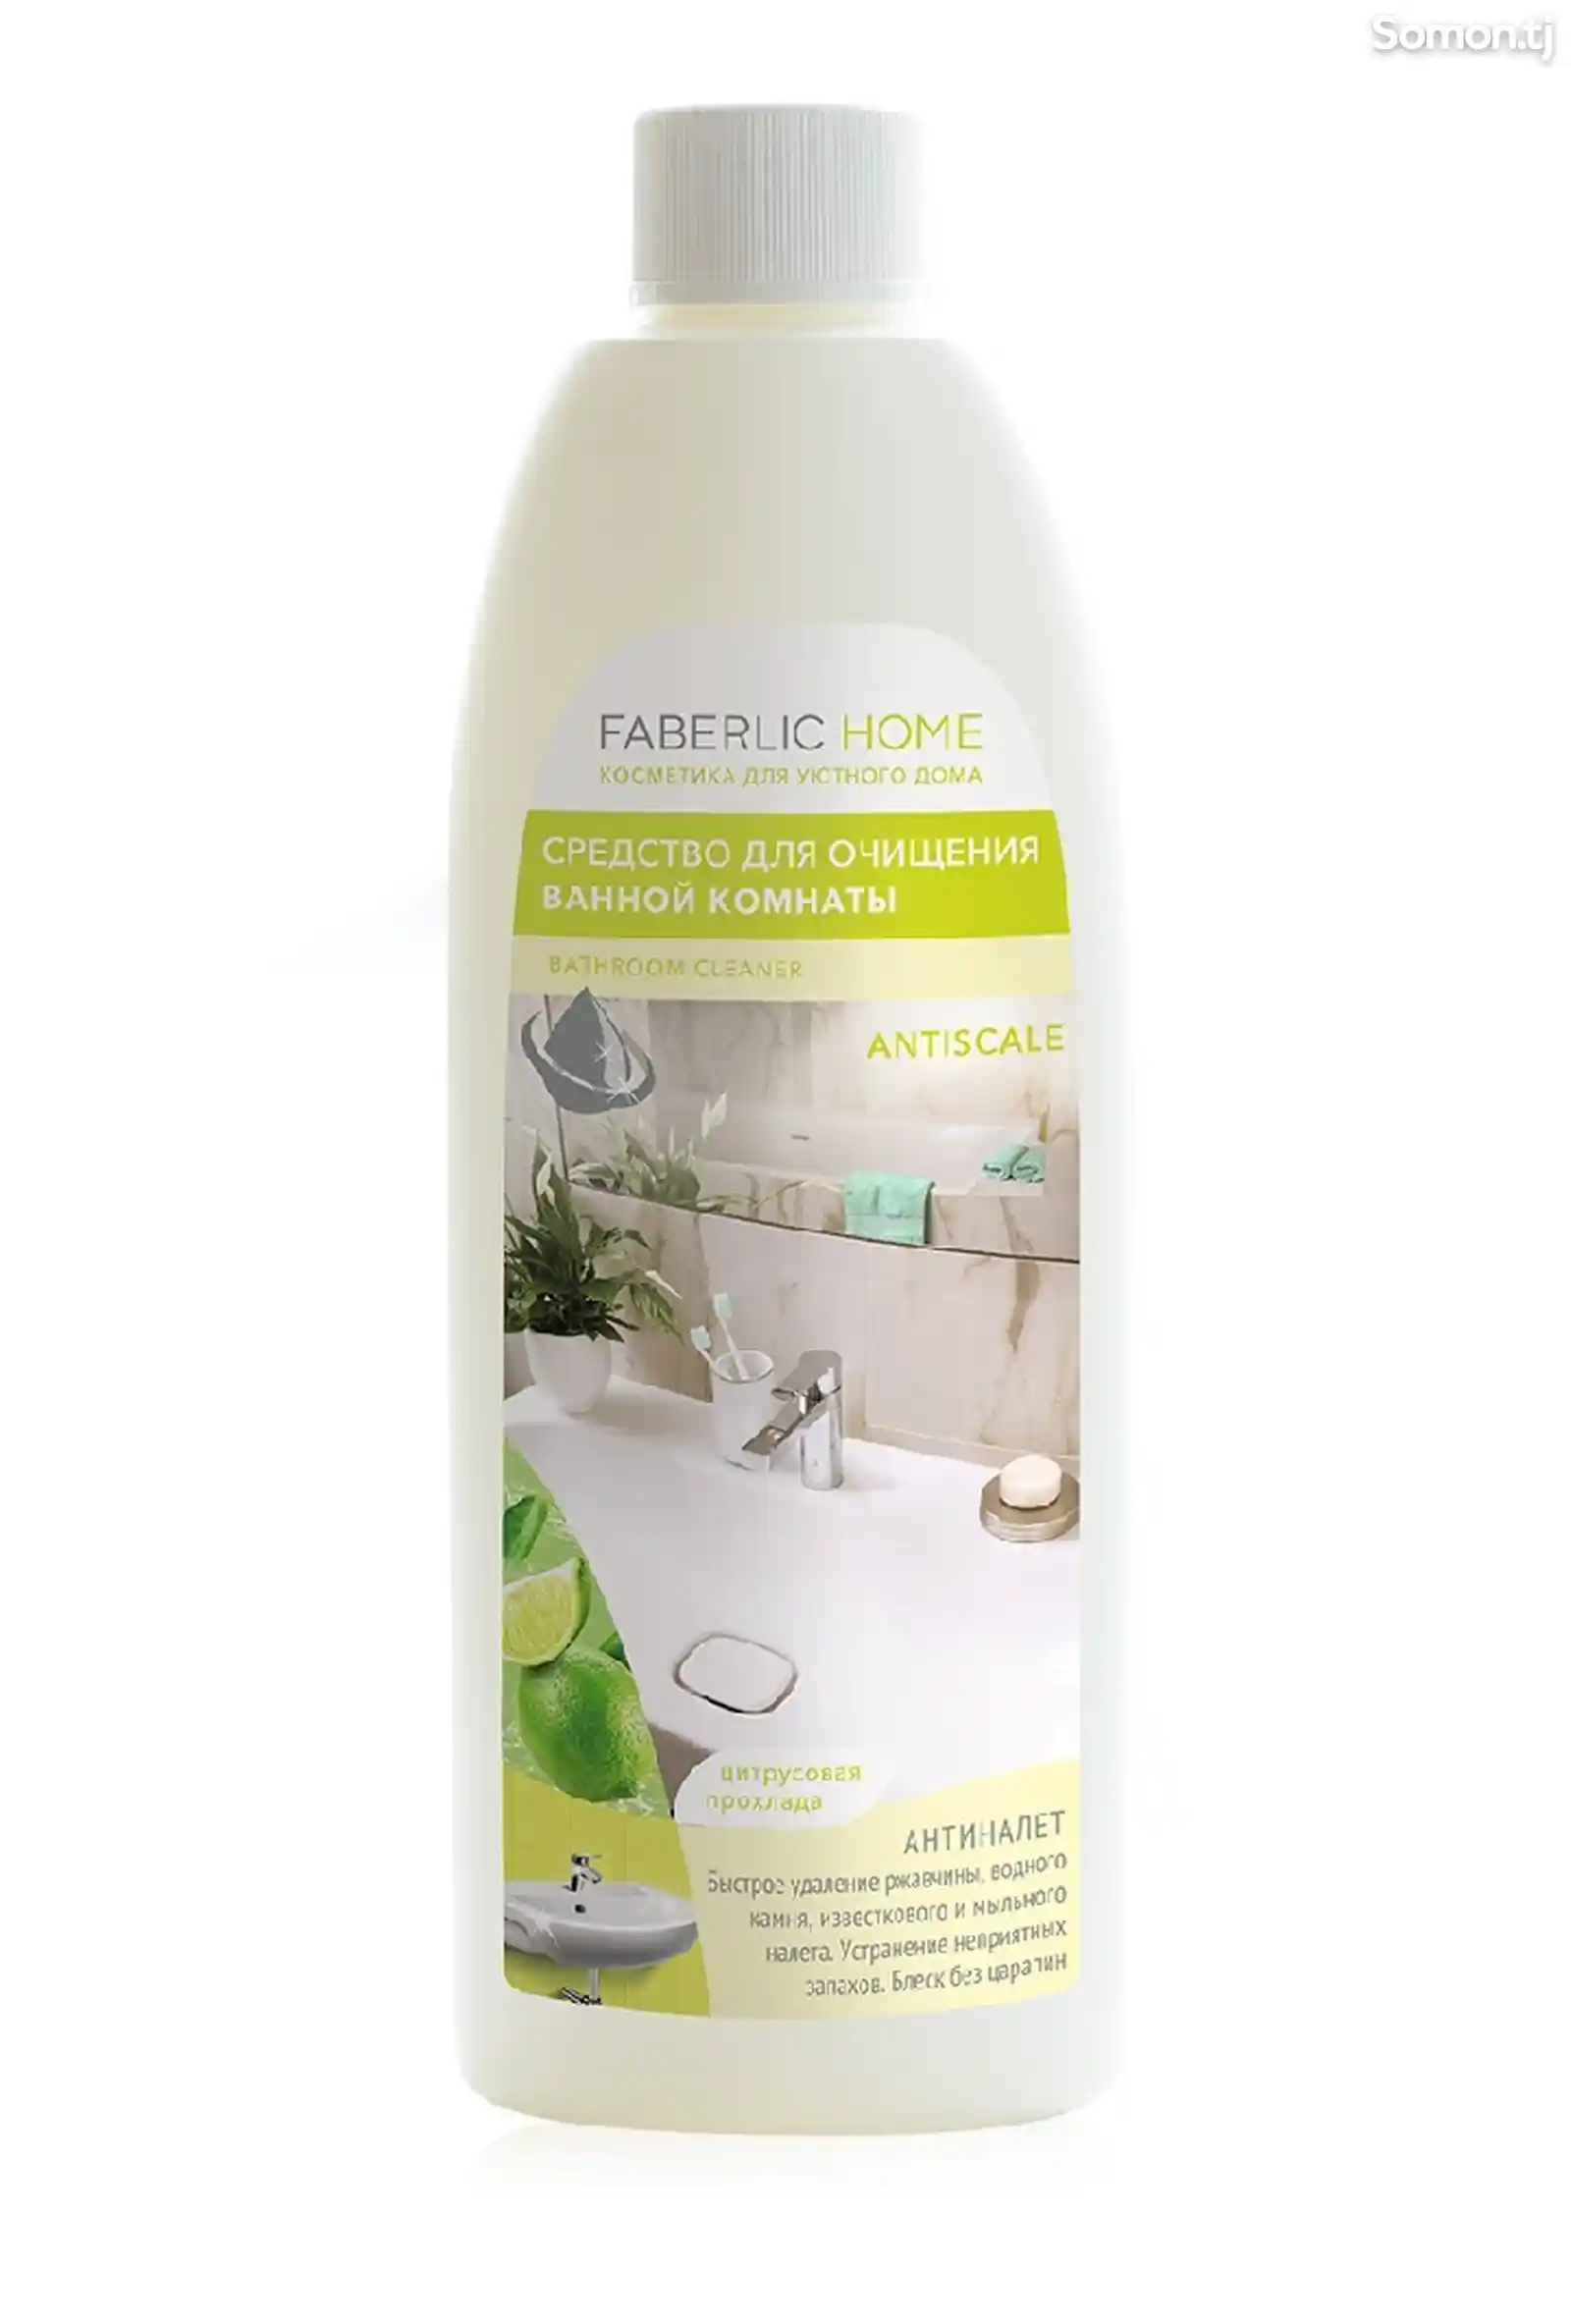 Средство для очищения ванной комнаты антиналет Faberlic Home